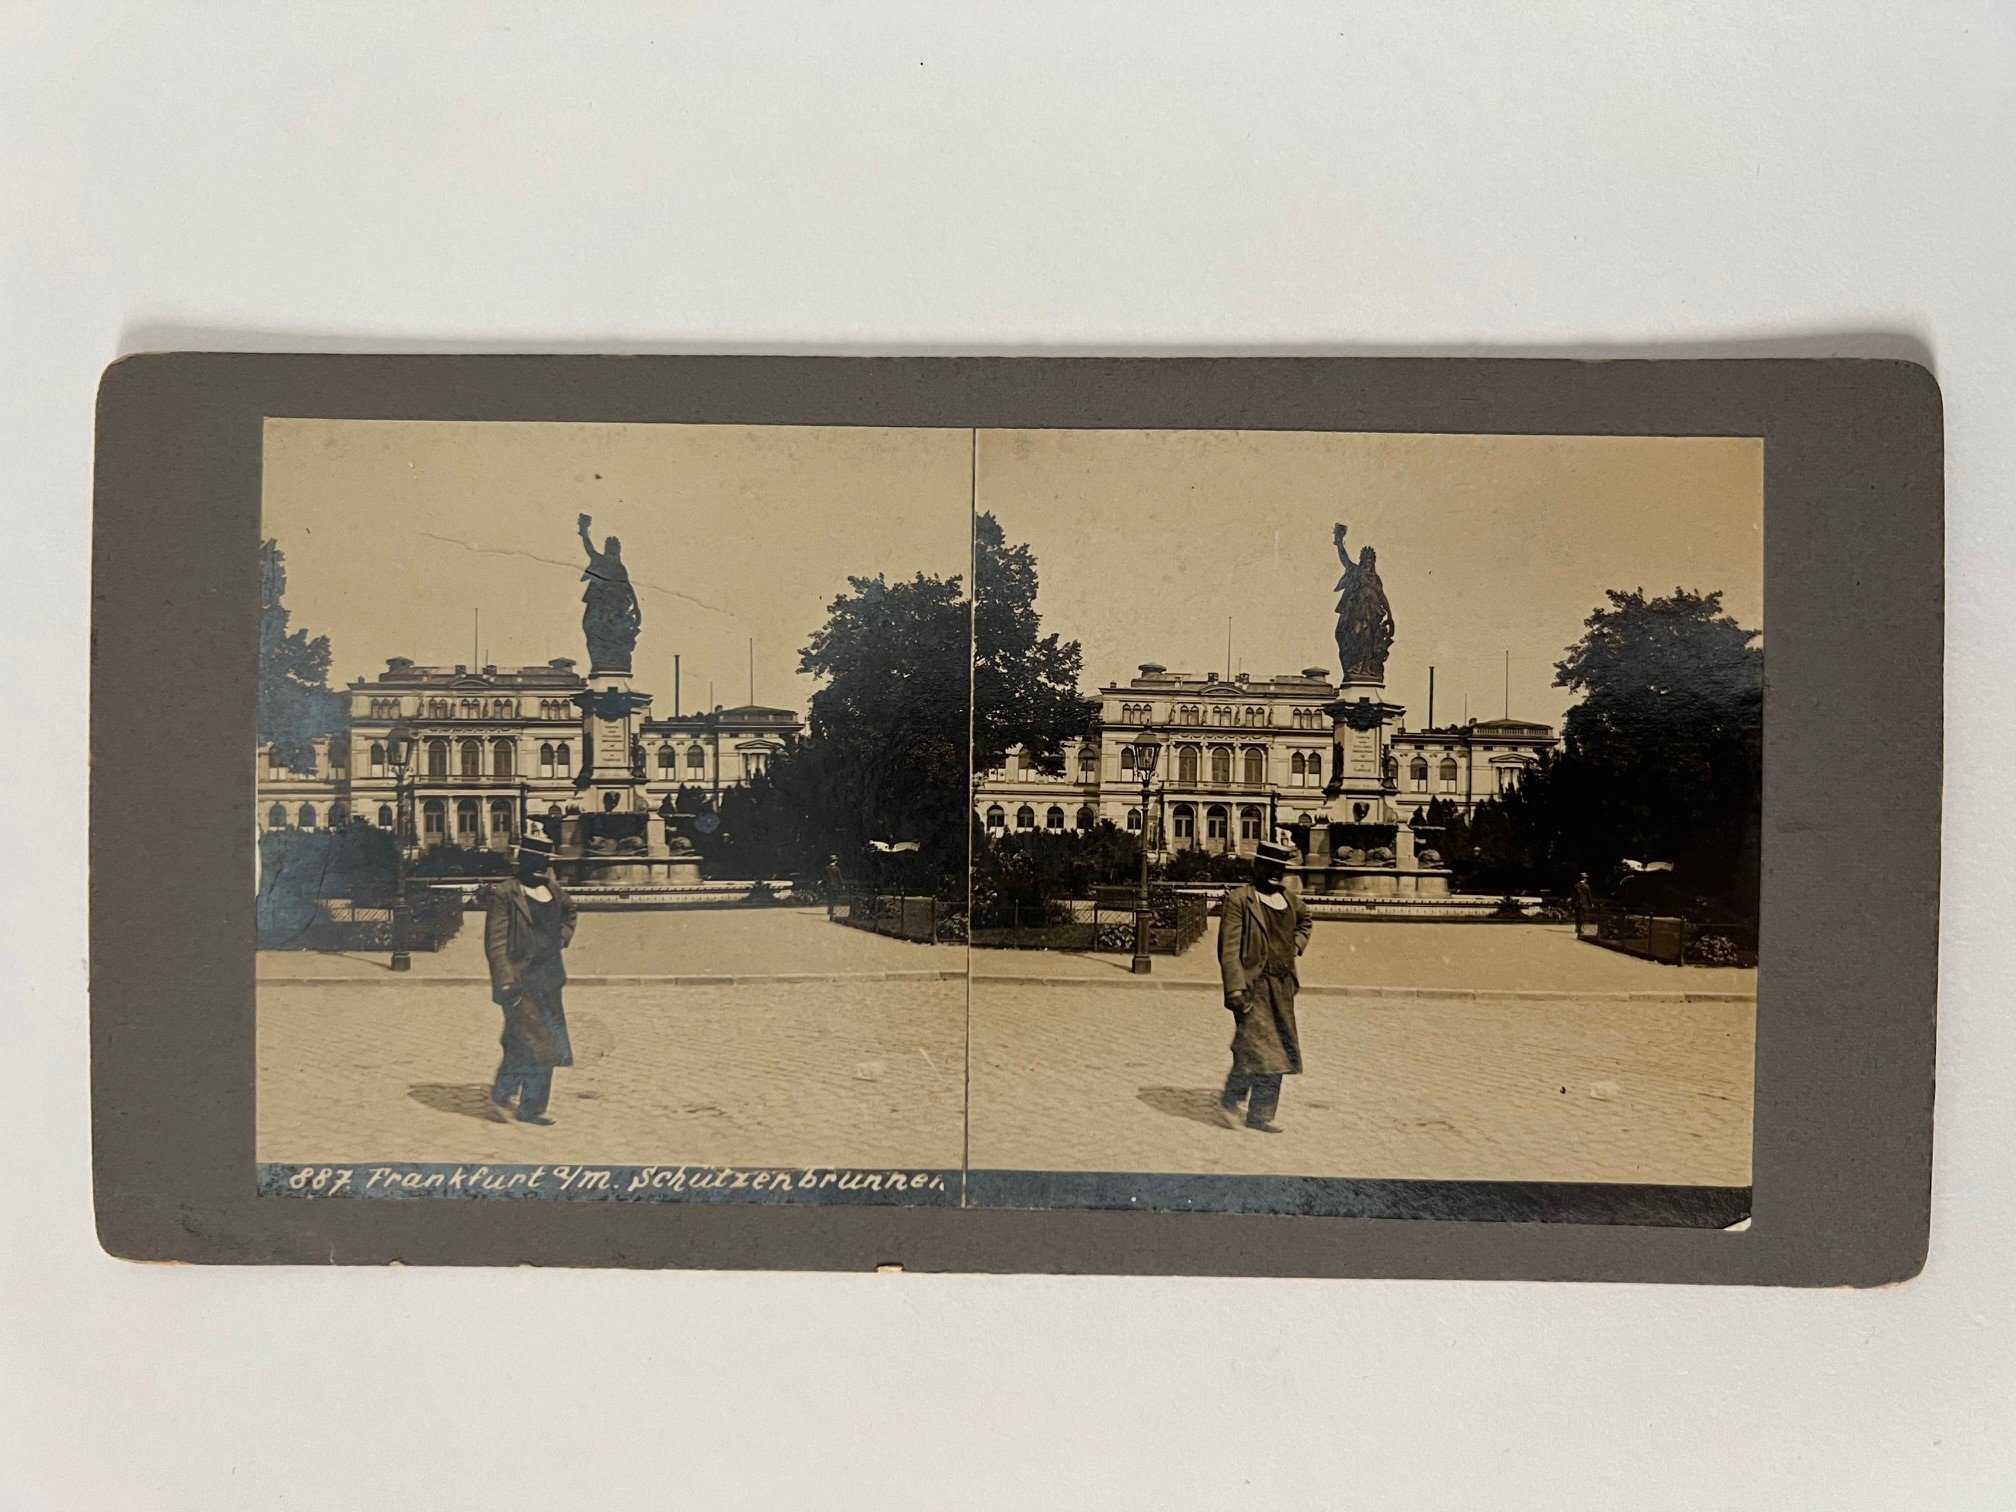 Stereobild, Unbekannter Fotograf, Frankfurt, Schützenbrunnen, ca. 1910. (Taunus-Rhein-Main - Regionalgeschichtliche Sammlung Dr. Stefan Naas CC BY-NC-SA)